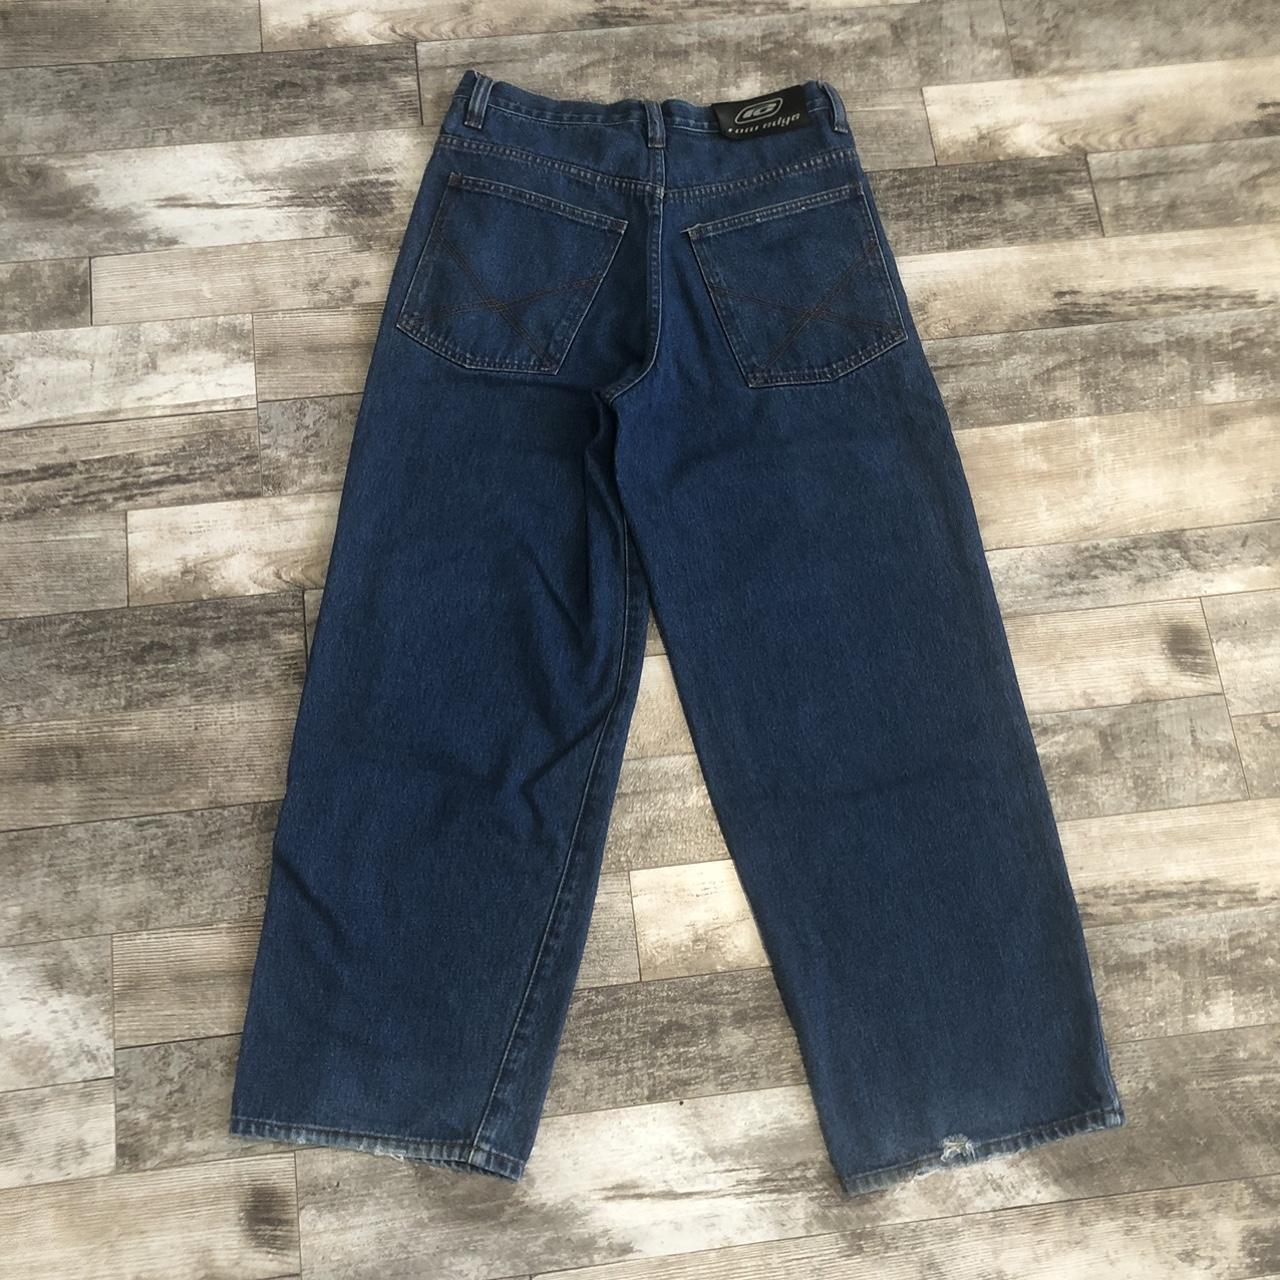 Vintage Row Edge Baggy Jeans Size 33 x 30 #Vintage... - Depop